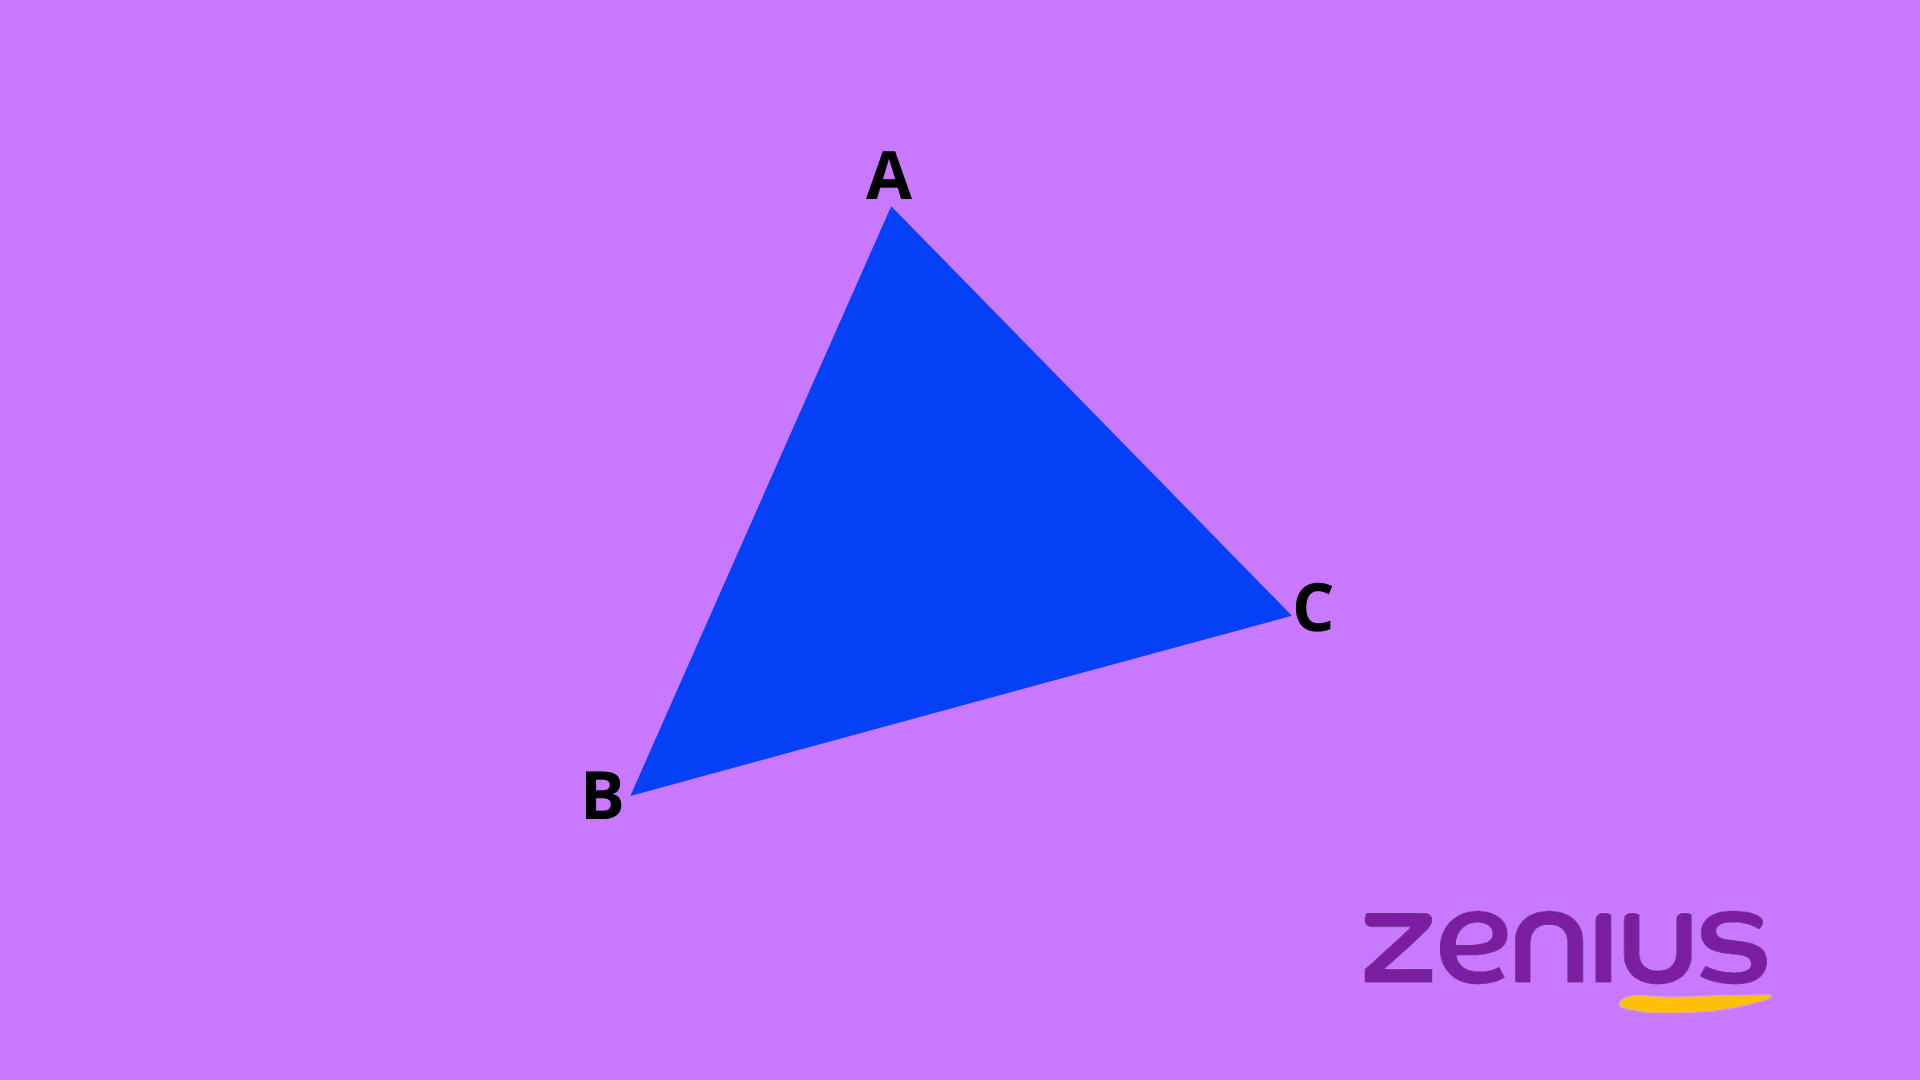 segitiga sembarang